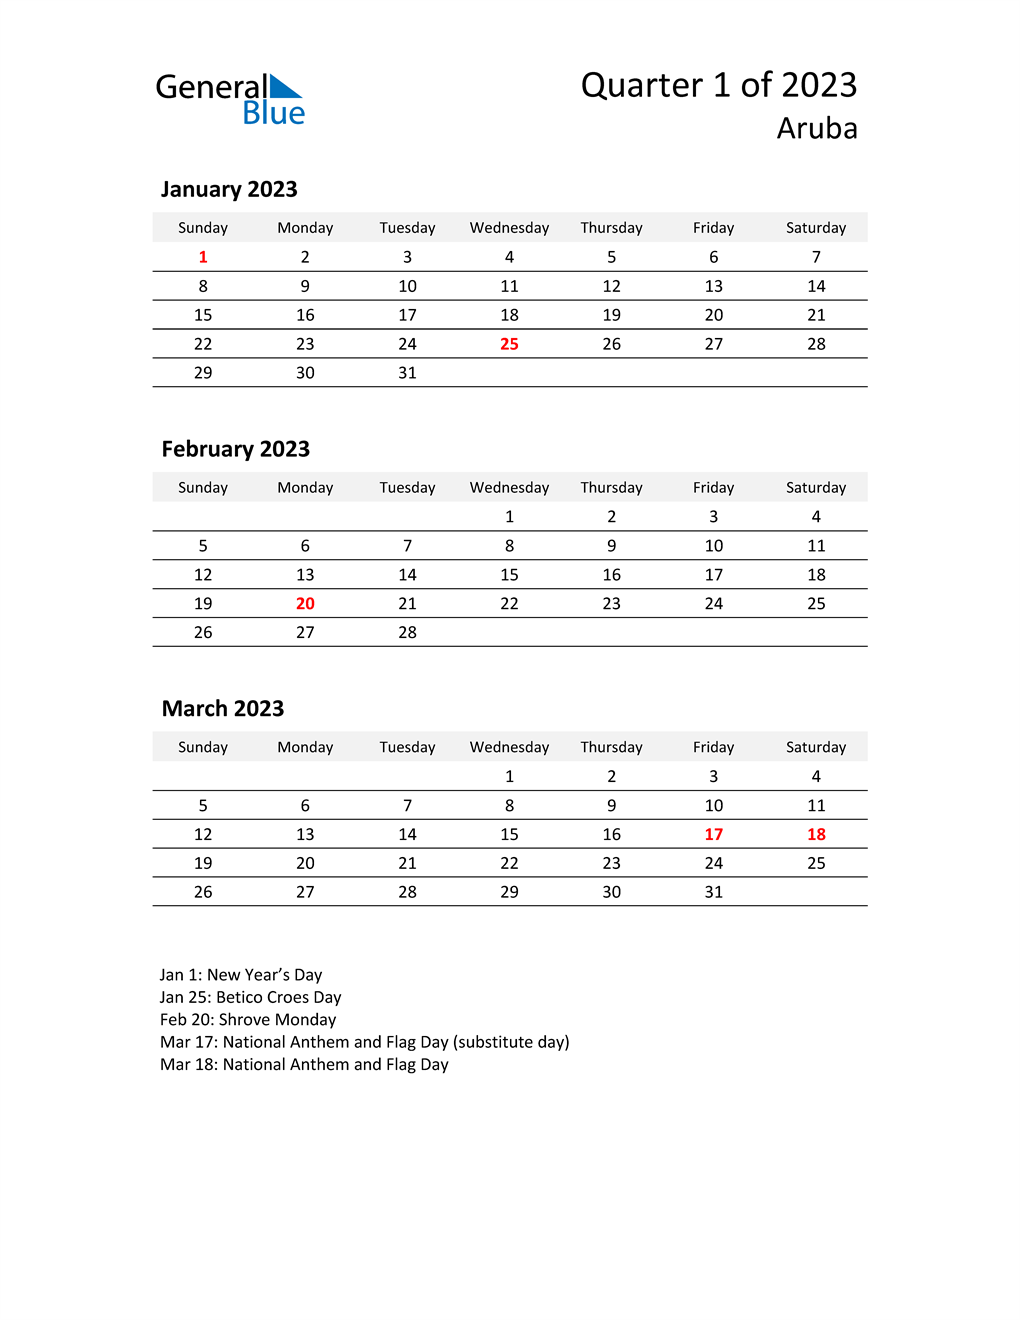  2023 Three-Month Calendar for Aruba